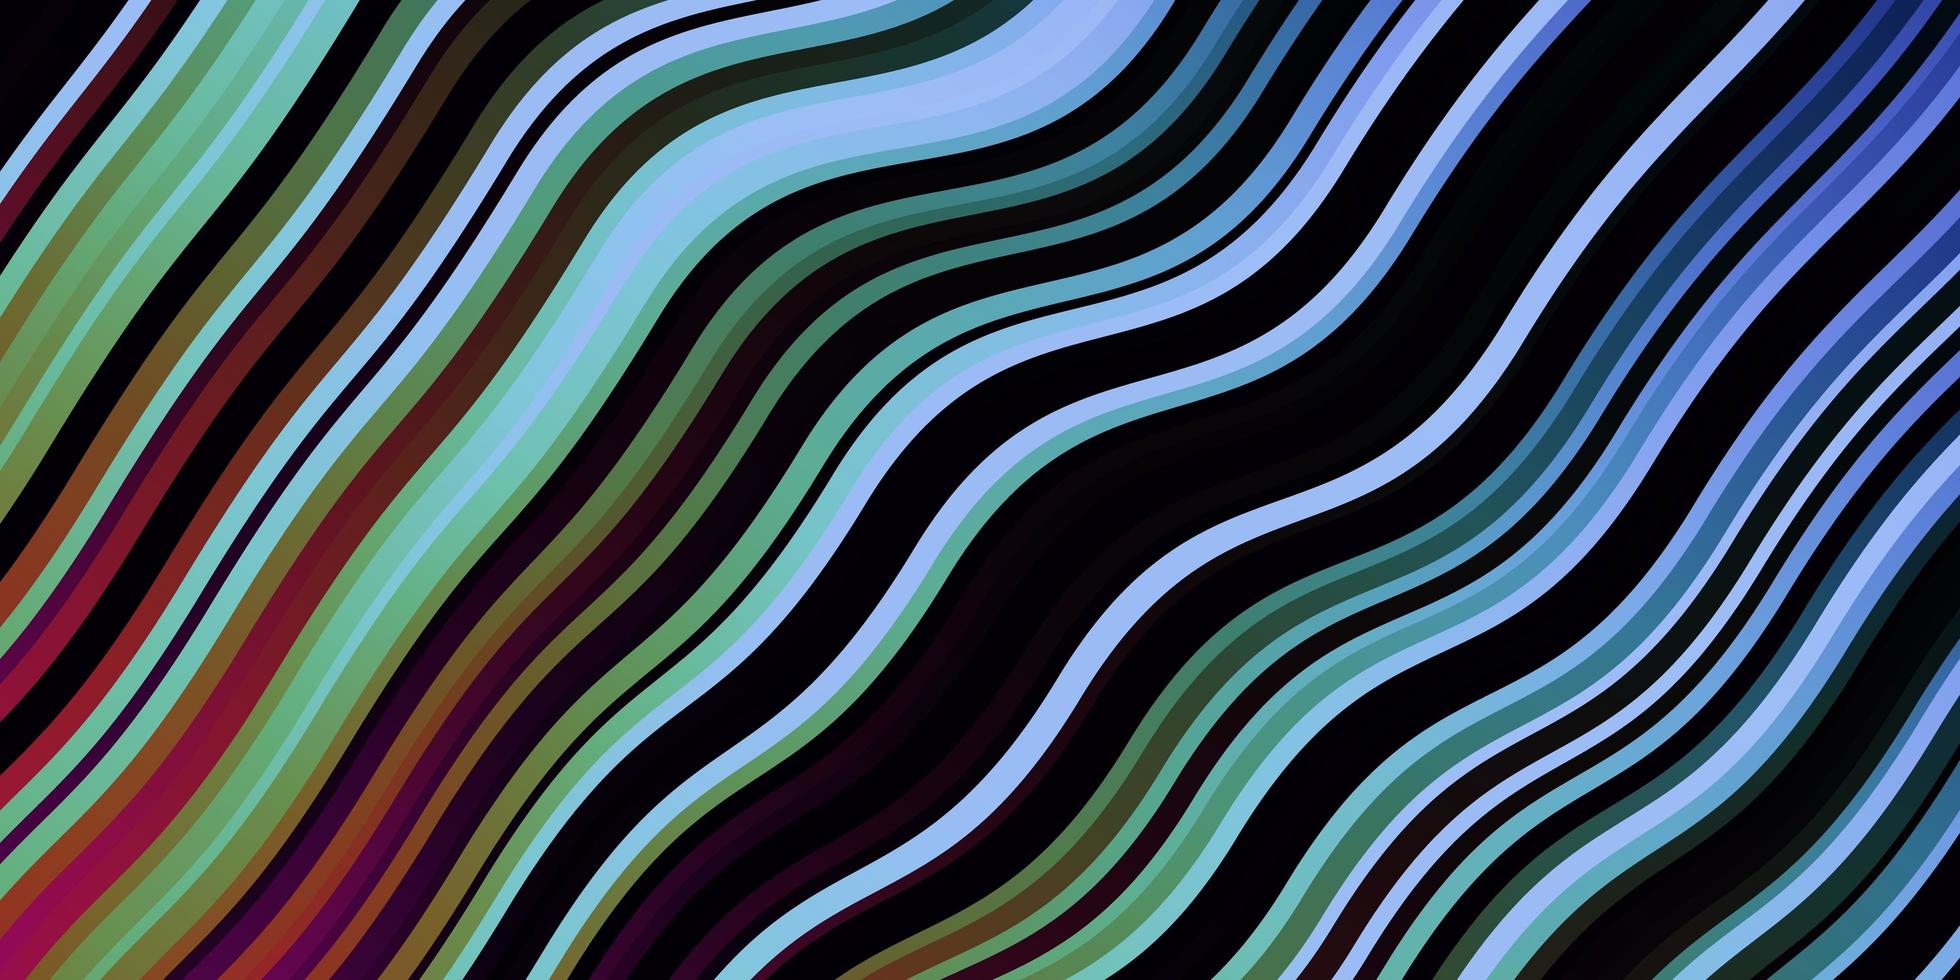 Dark Multicolor vector backdrop with curves.